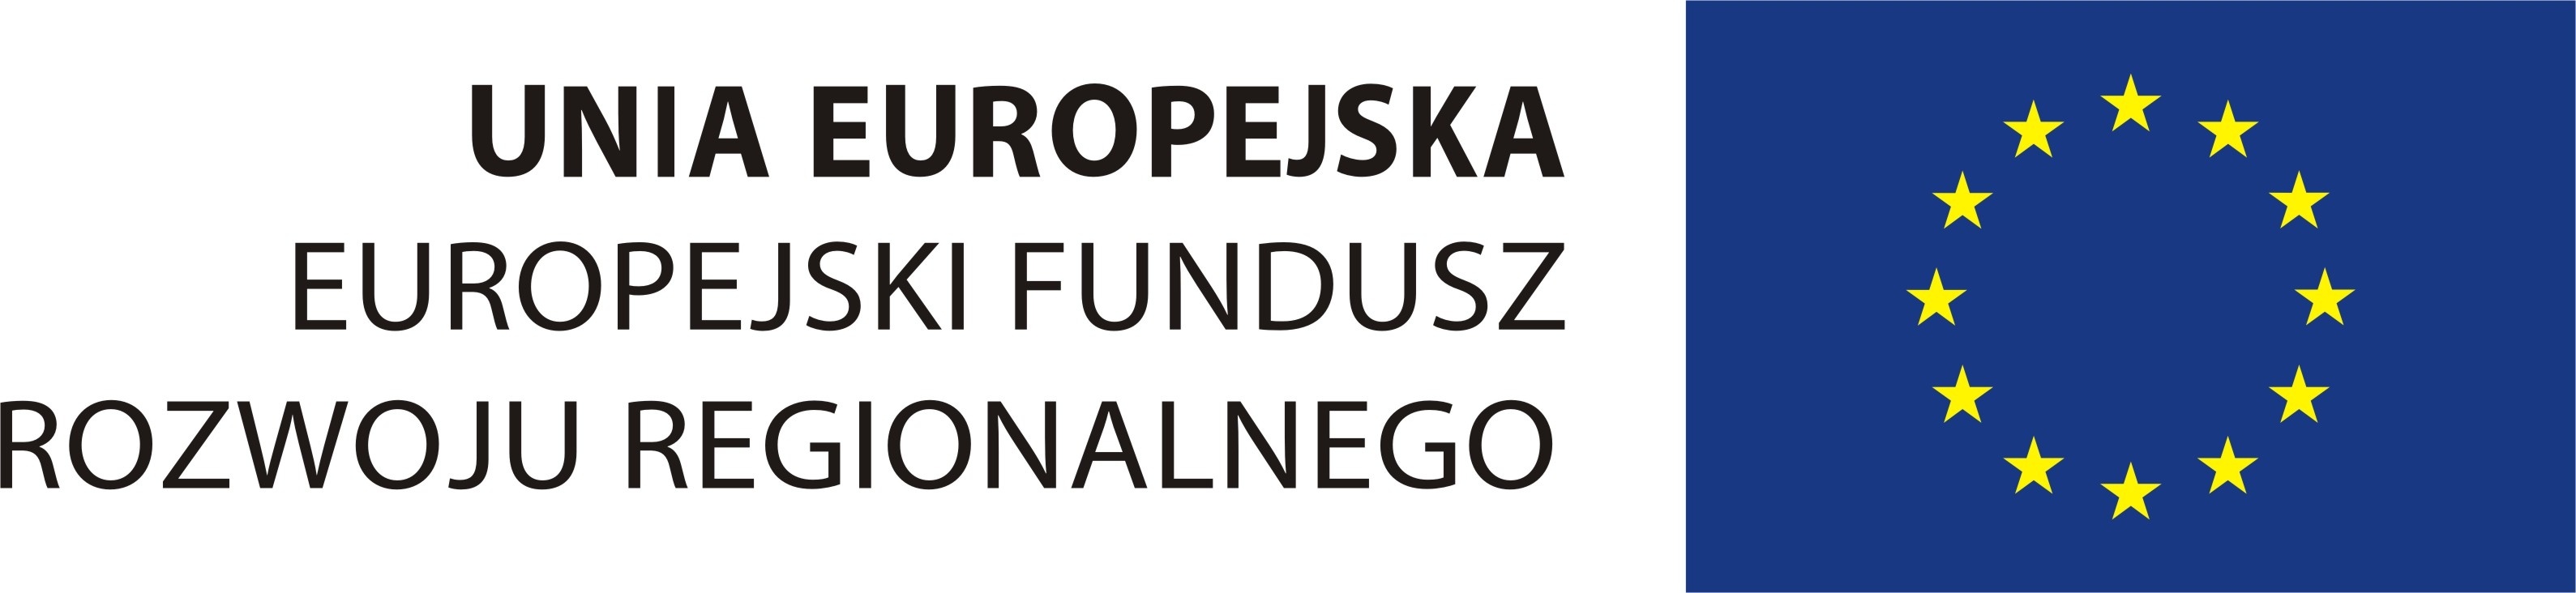 http://interaktywnie.com/public/upload/img/orginal/04/62/46225_eu_logo.jpg